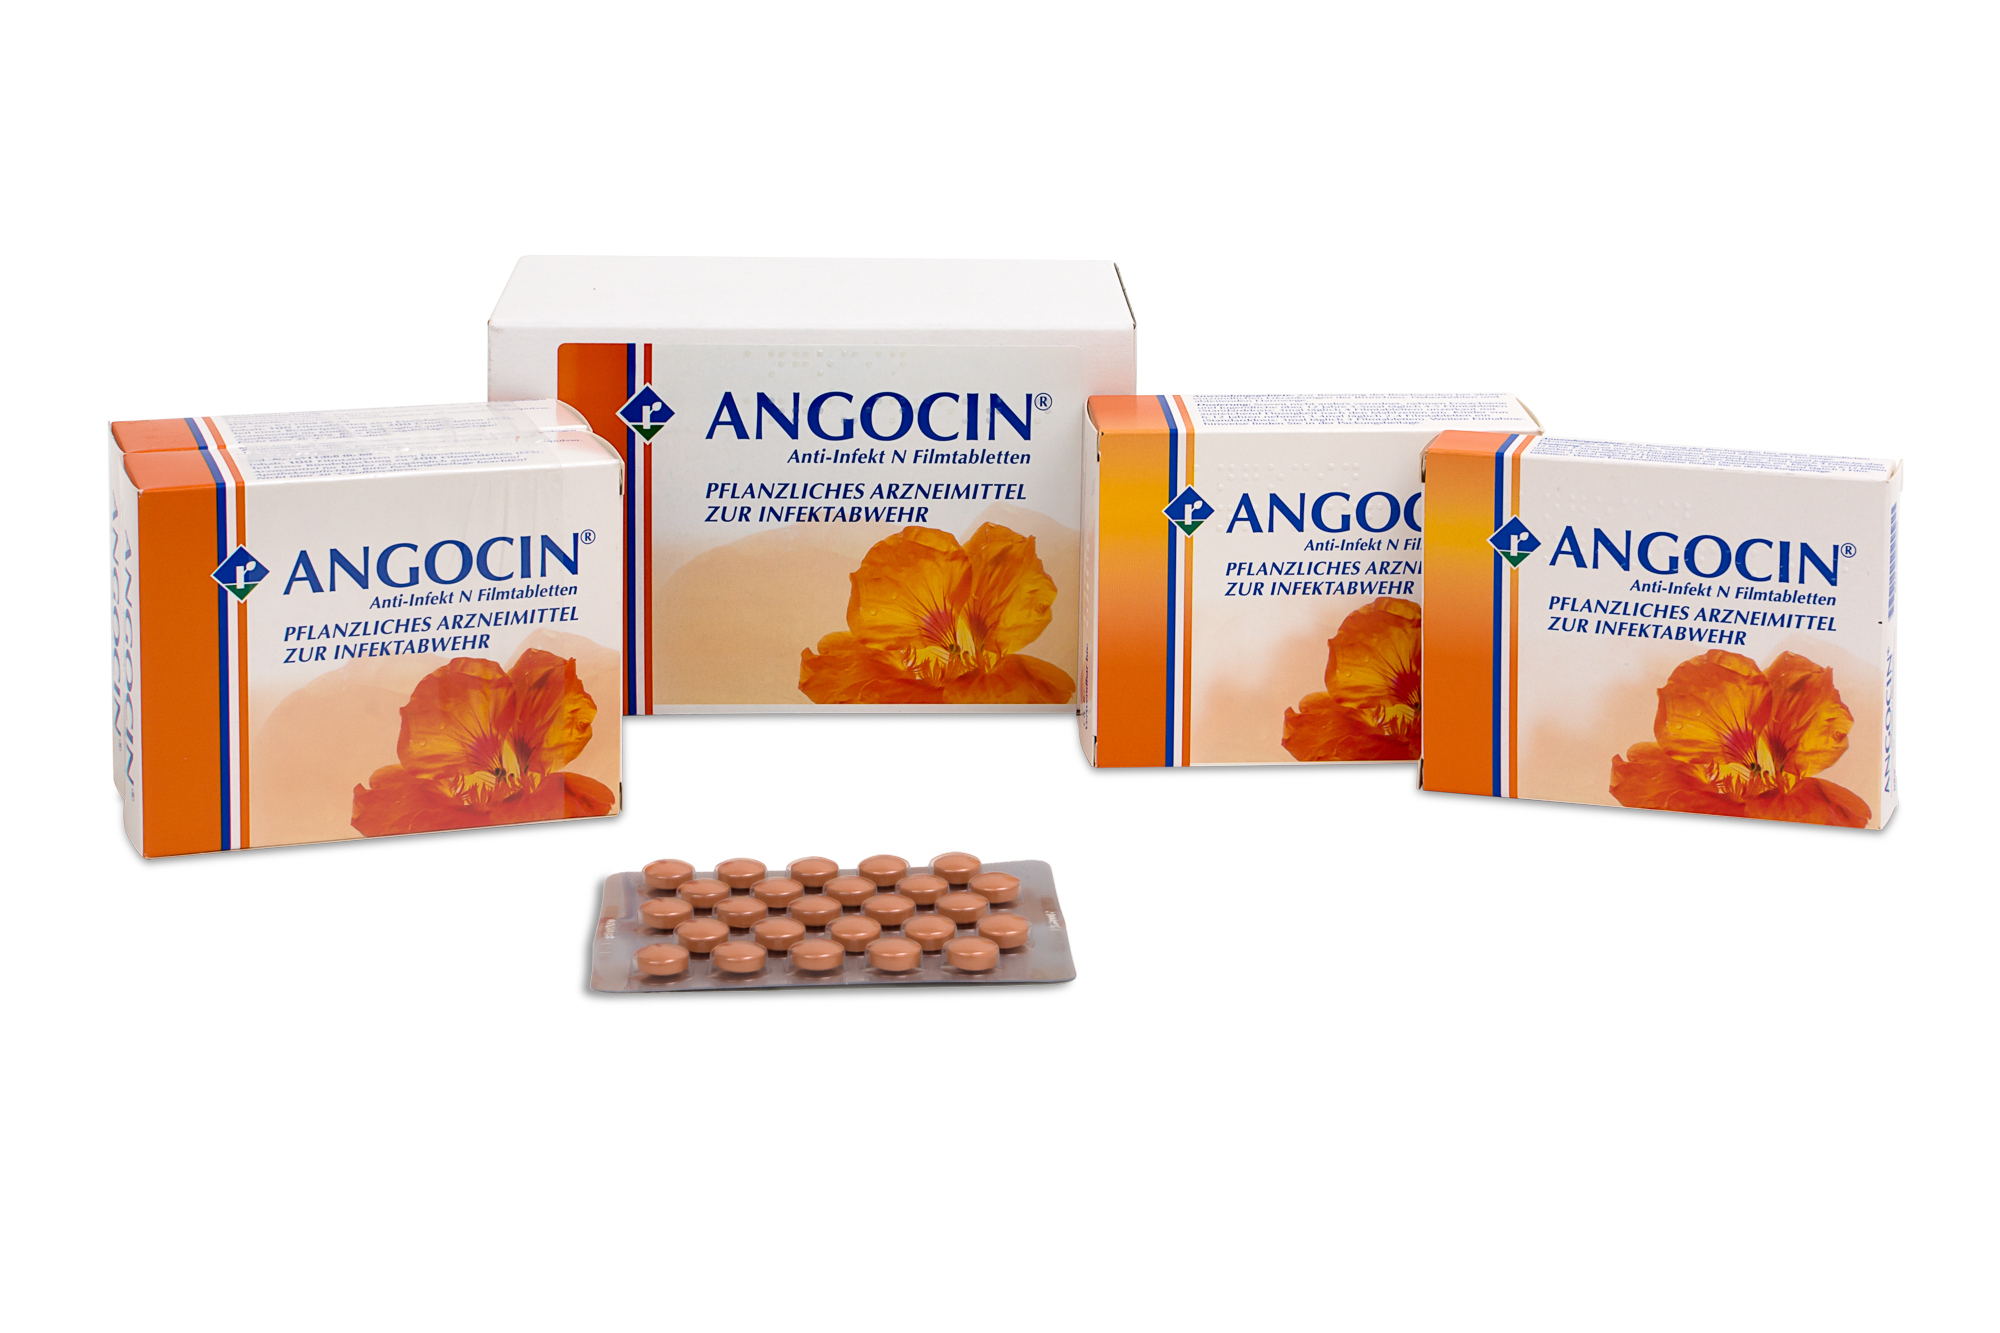 Angocin